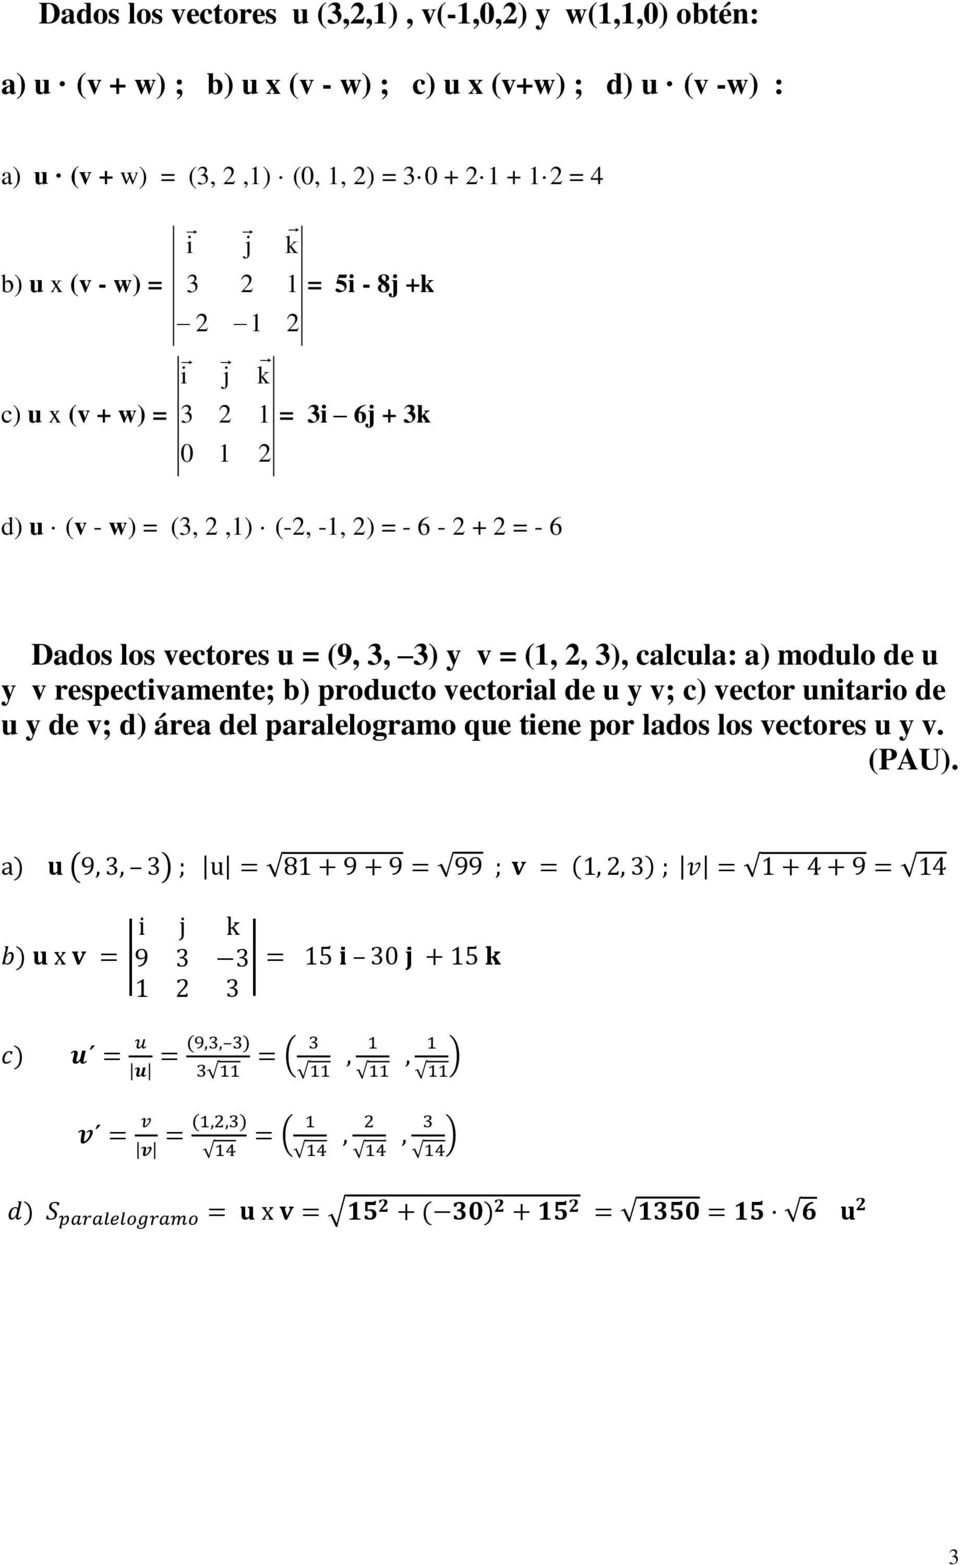 (v - w) = (3, 2,1) (-2, -1, 2) = - 6-2 + 2 = - 6 Dados los vectores u = (9, 3, 3) y v = (1, 2, 3), calcula: a) modulo de u y v